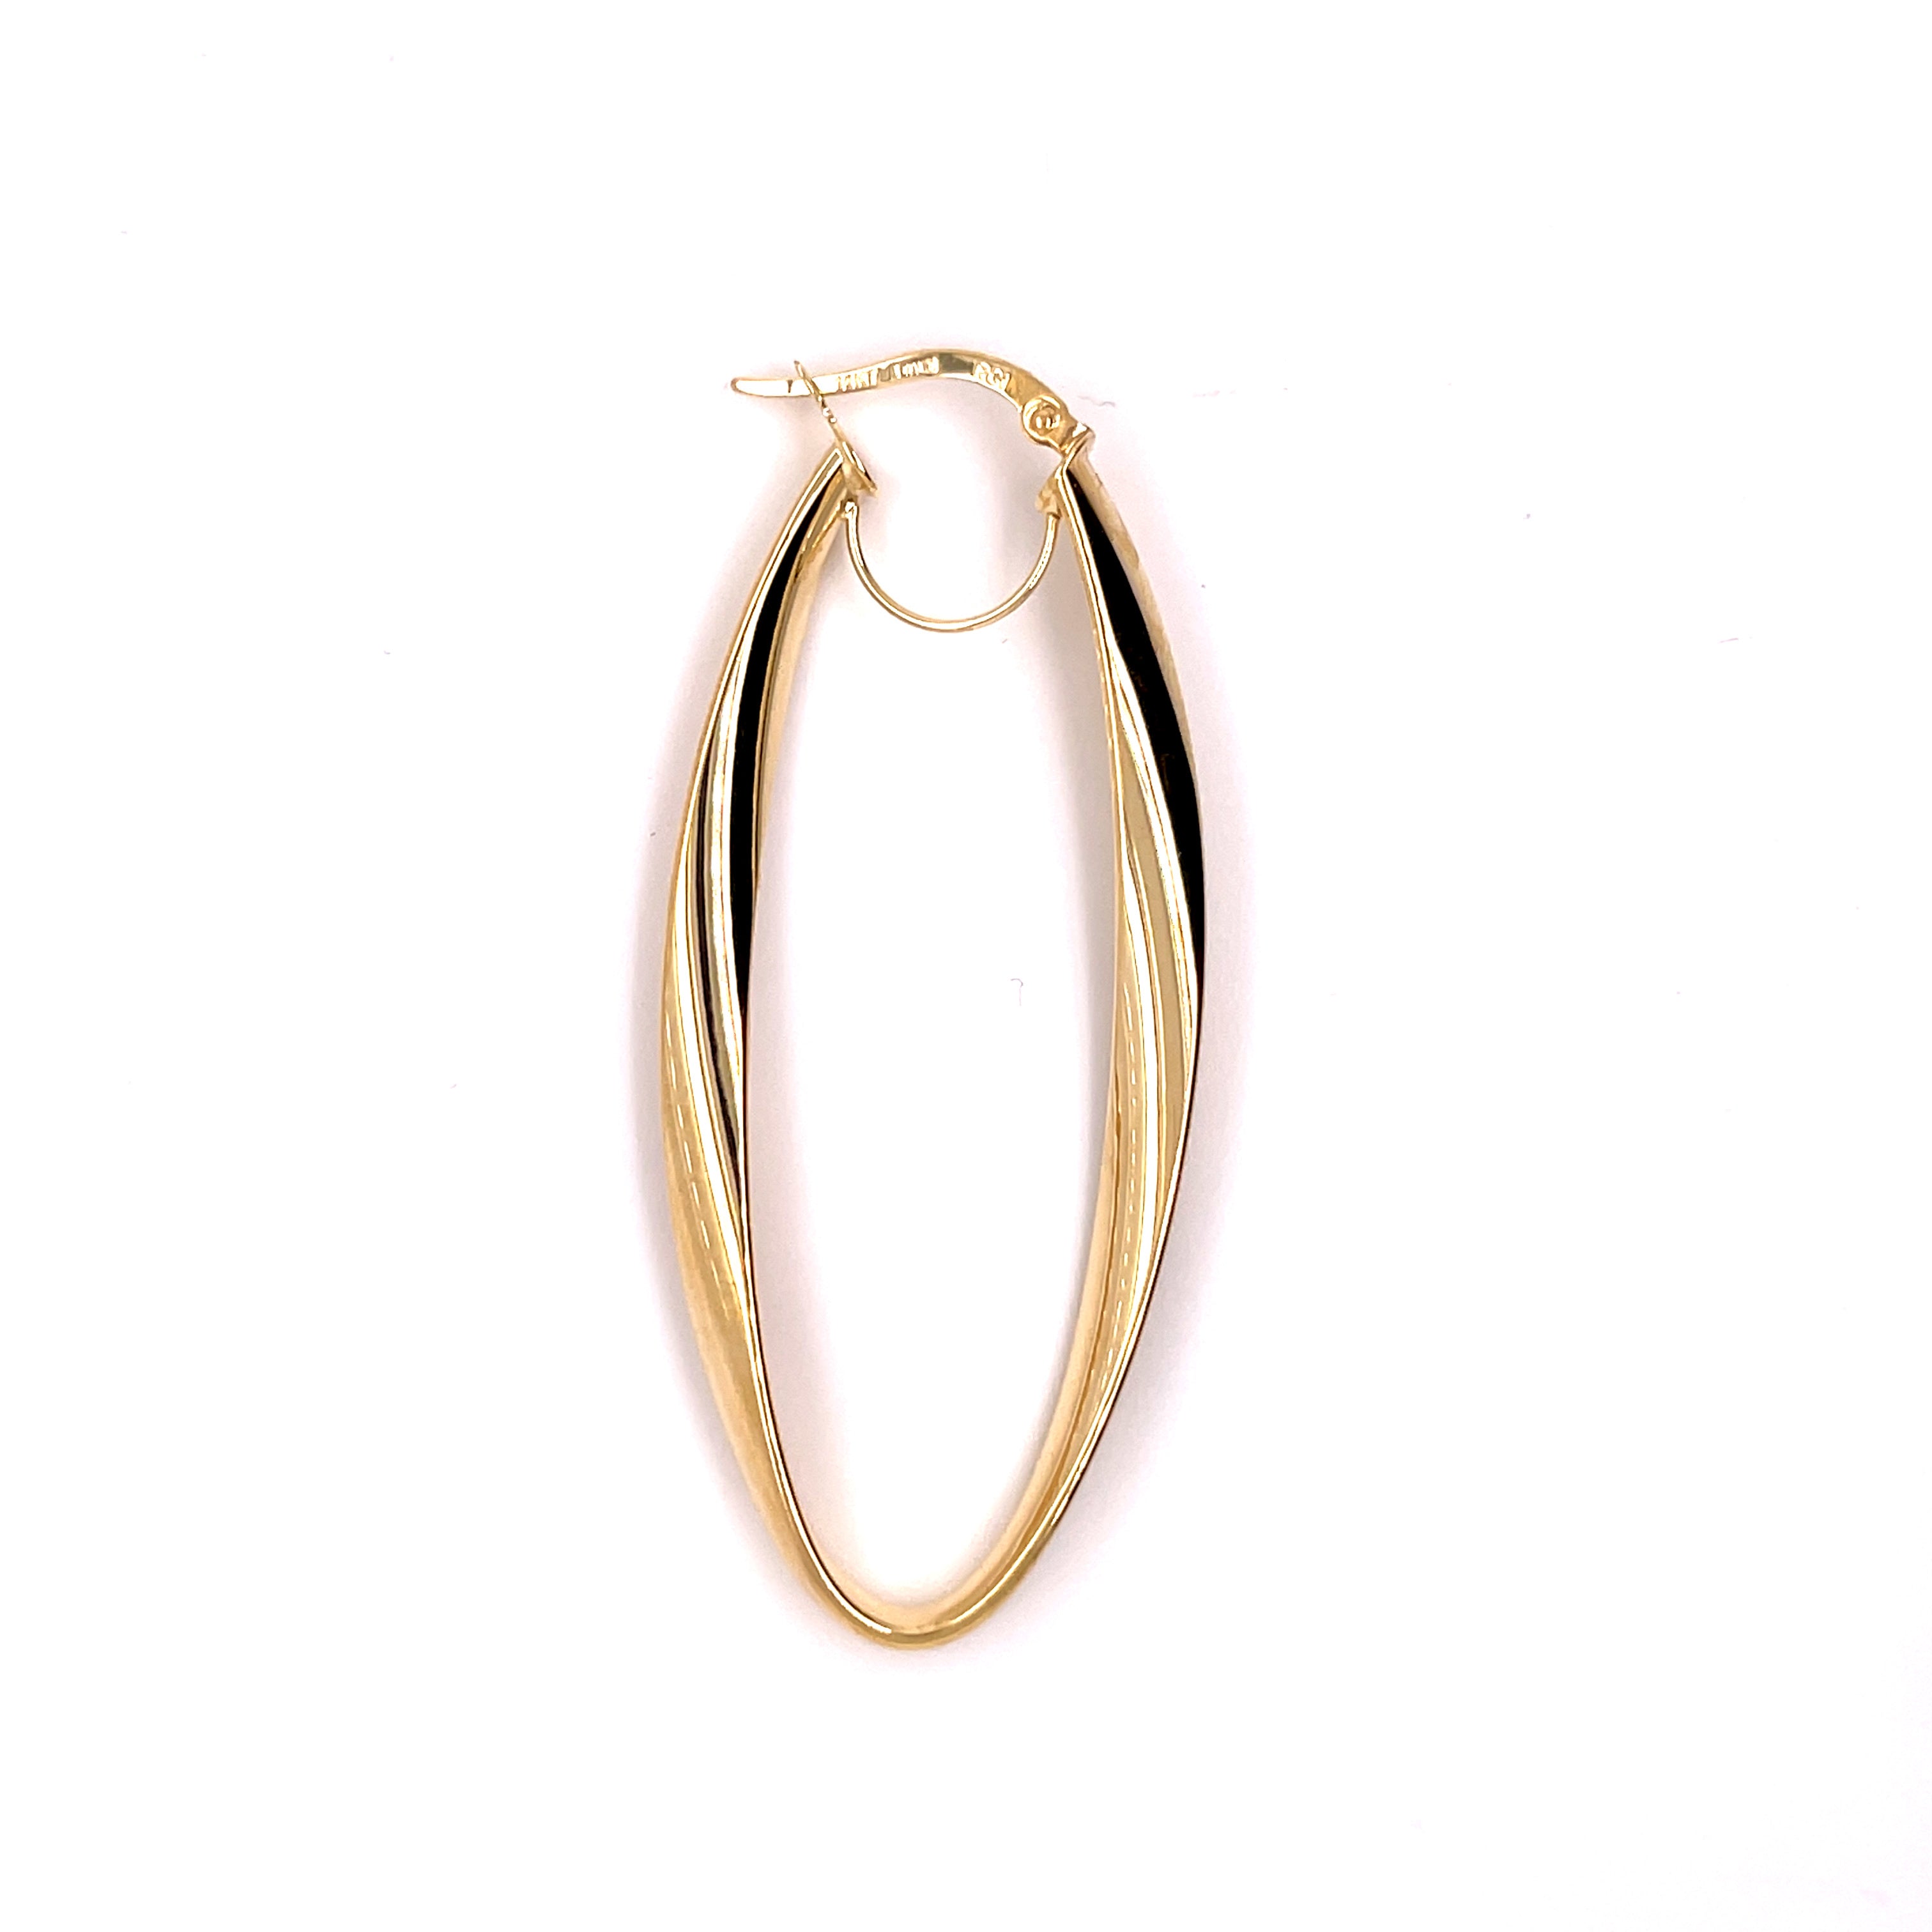 14K Gold Large Twist Oval Hoop Earring Set